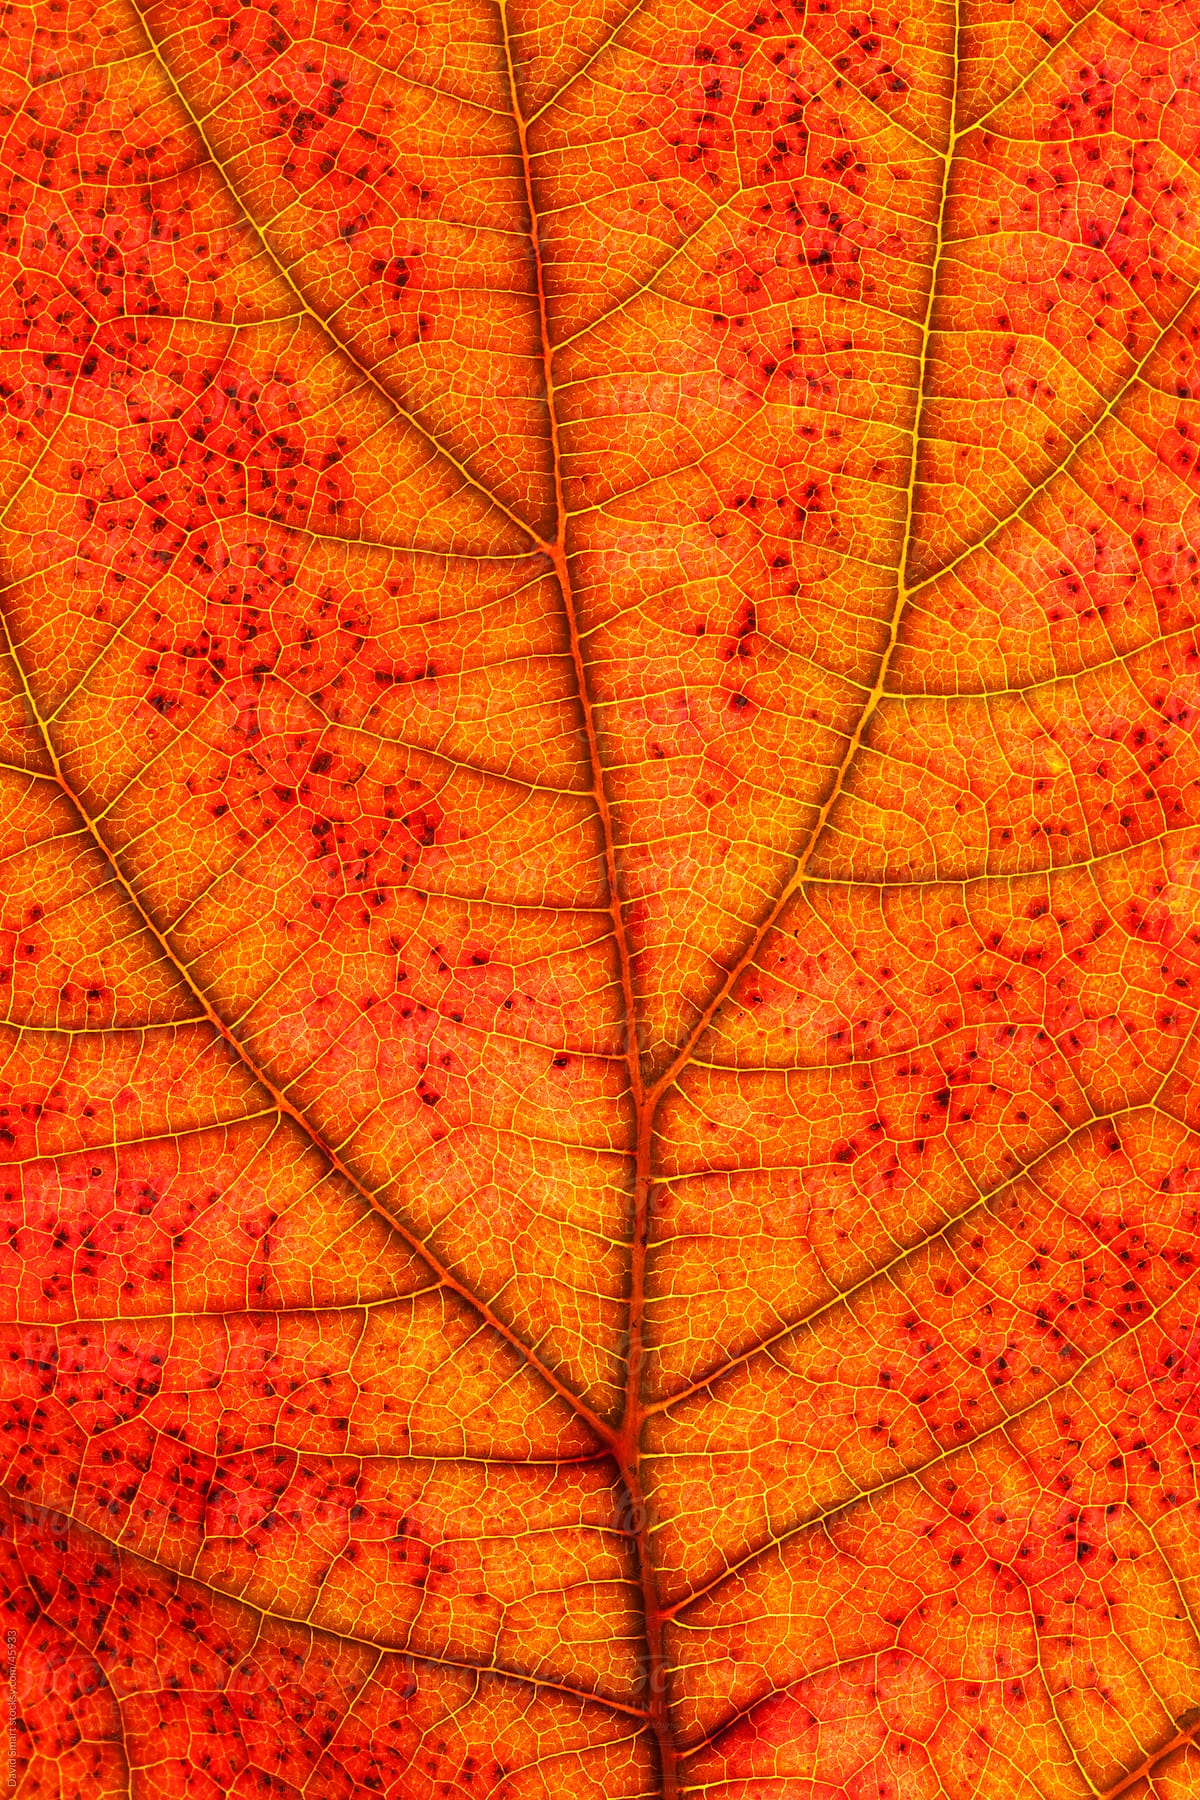 Autumn leaf detail showing veins